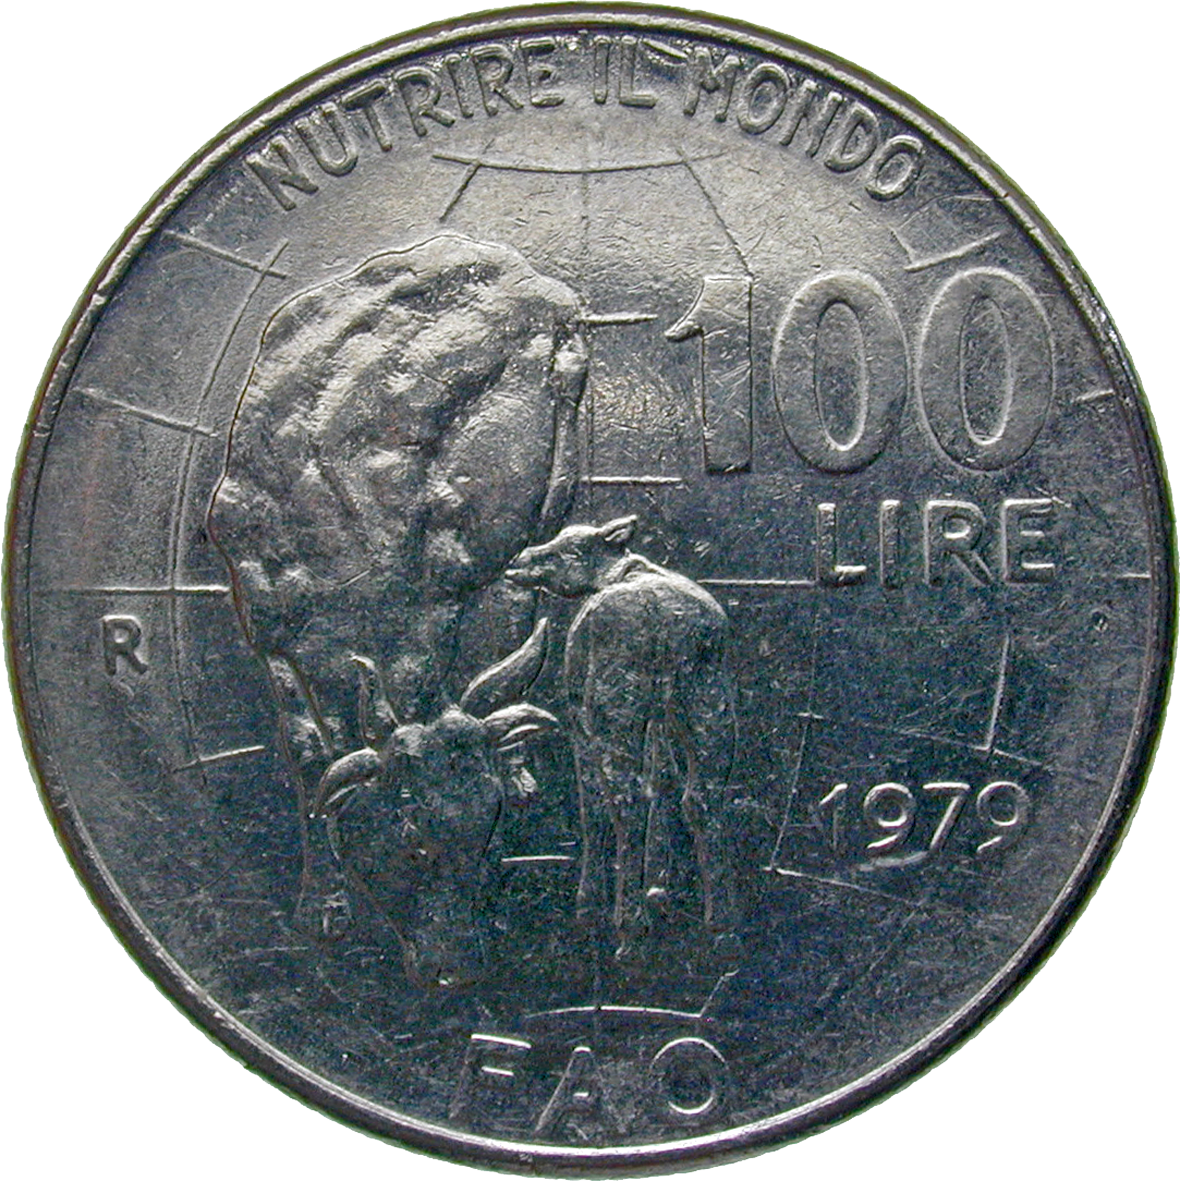 Republik Italien, 100 Lire 1979 (reverse)